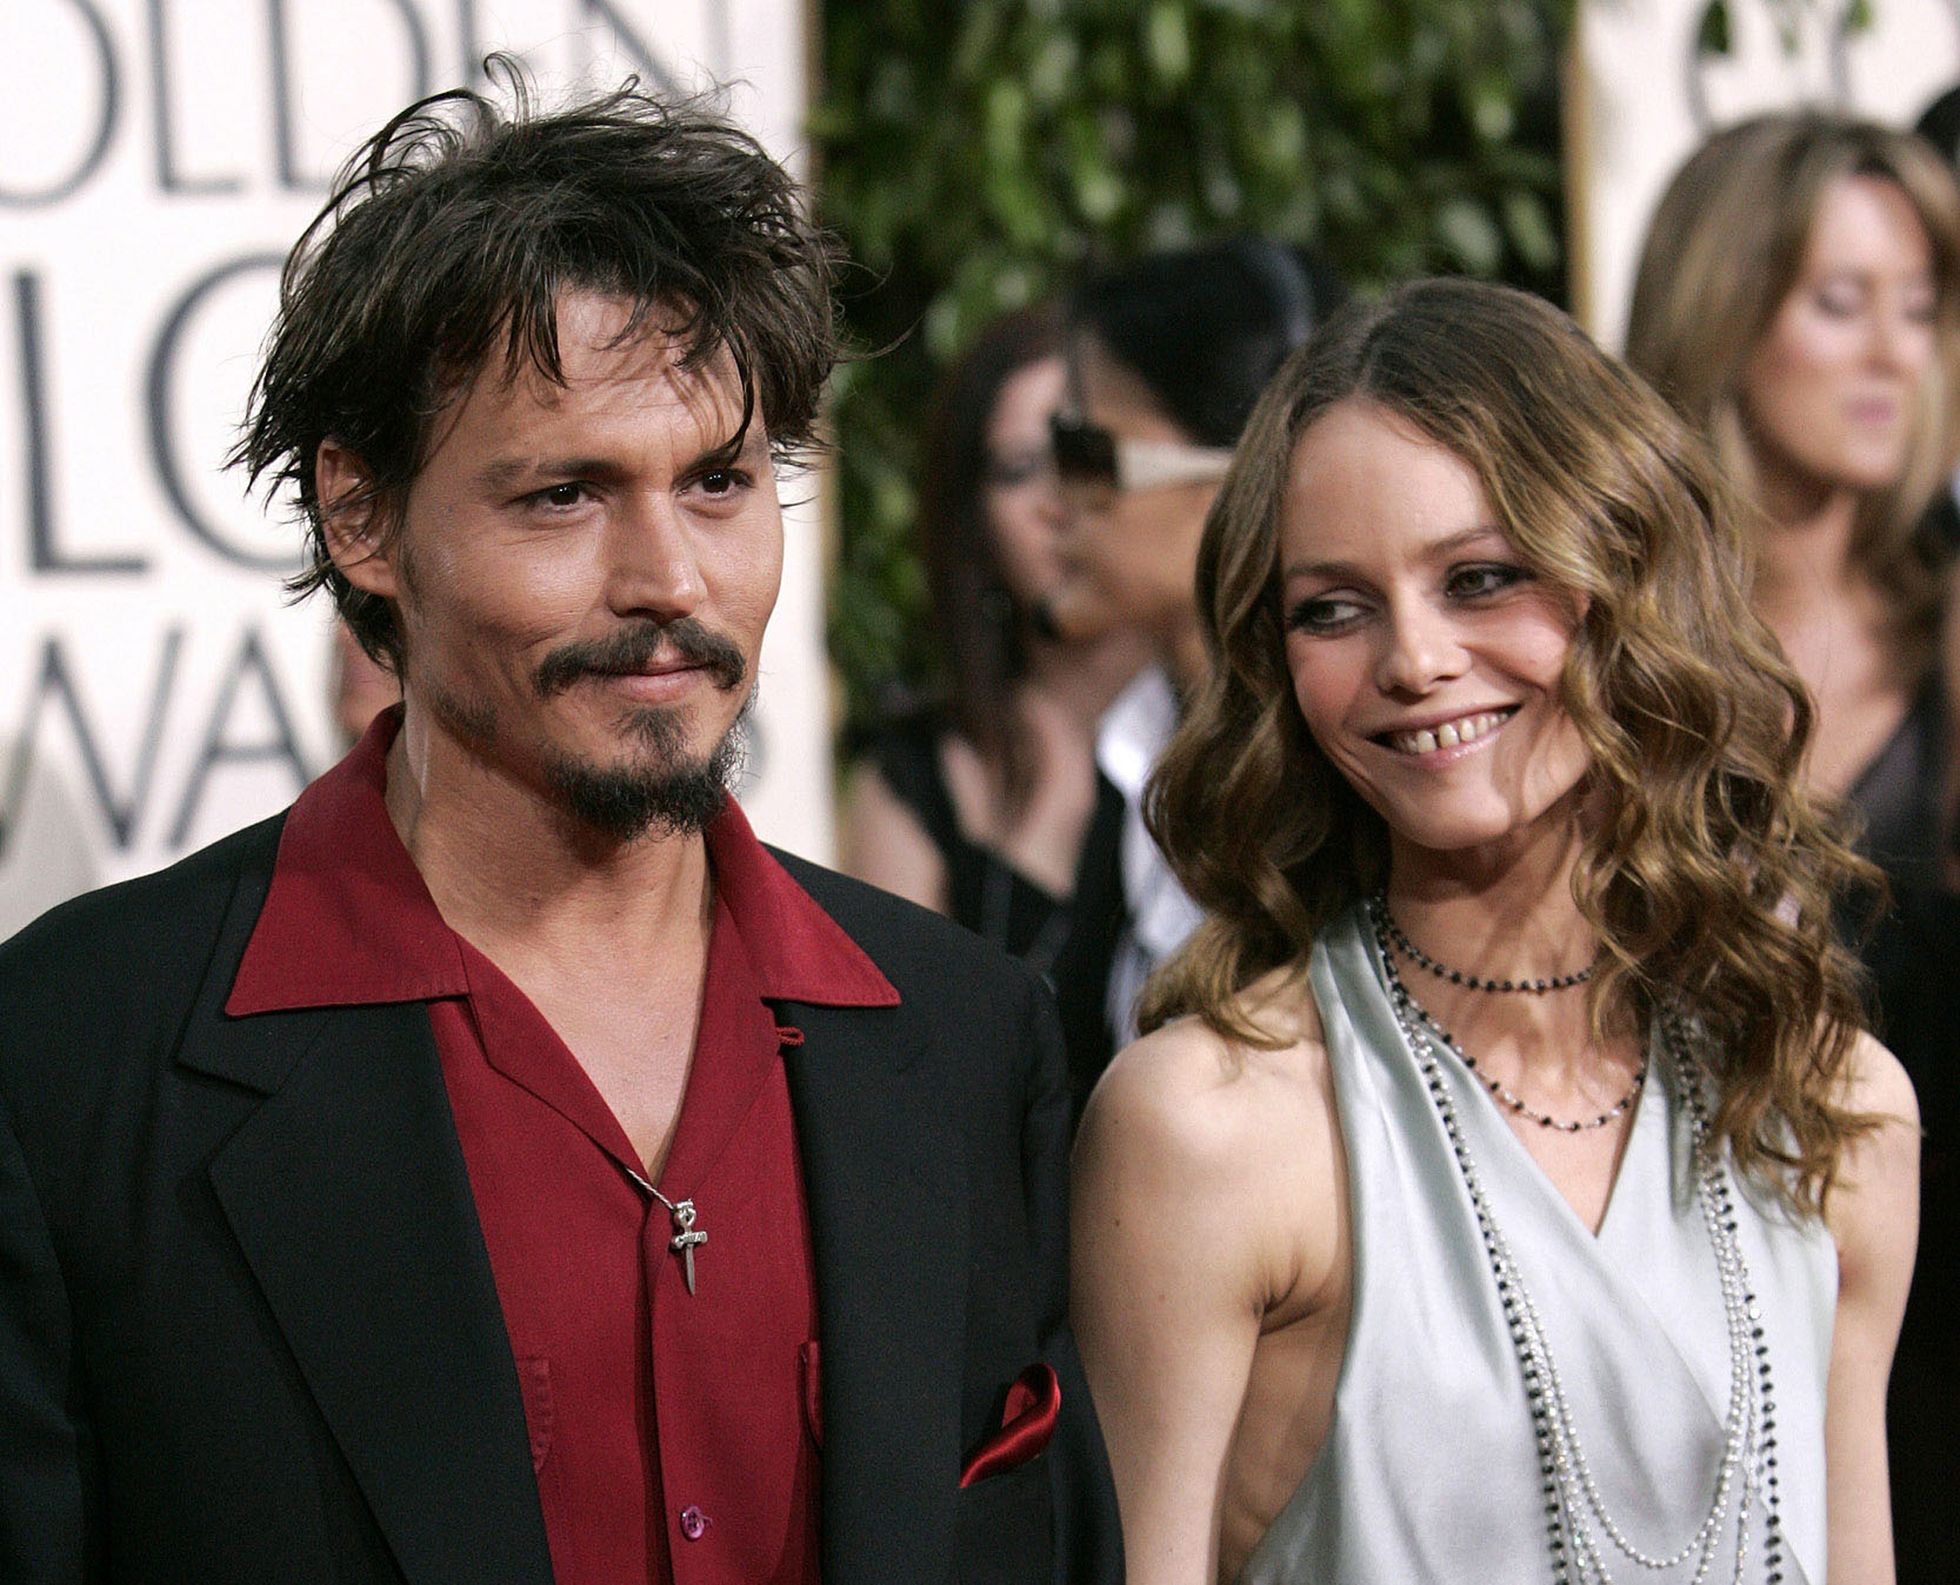 Näitleja Johnny Depp rentis kunagi kõik tummfilmide kino ruumid, et prantslanna Vanessa Paradisiga (46) kohtama minna. Depp peab seda oma kõige romantilisemaks žestiks, mida ta on teinud. 